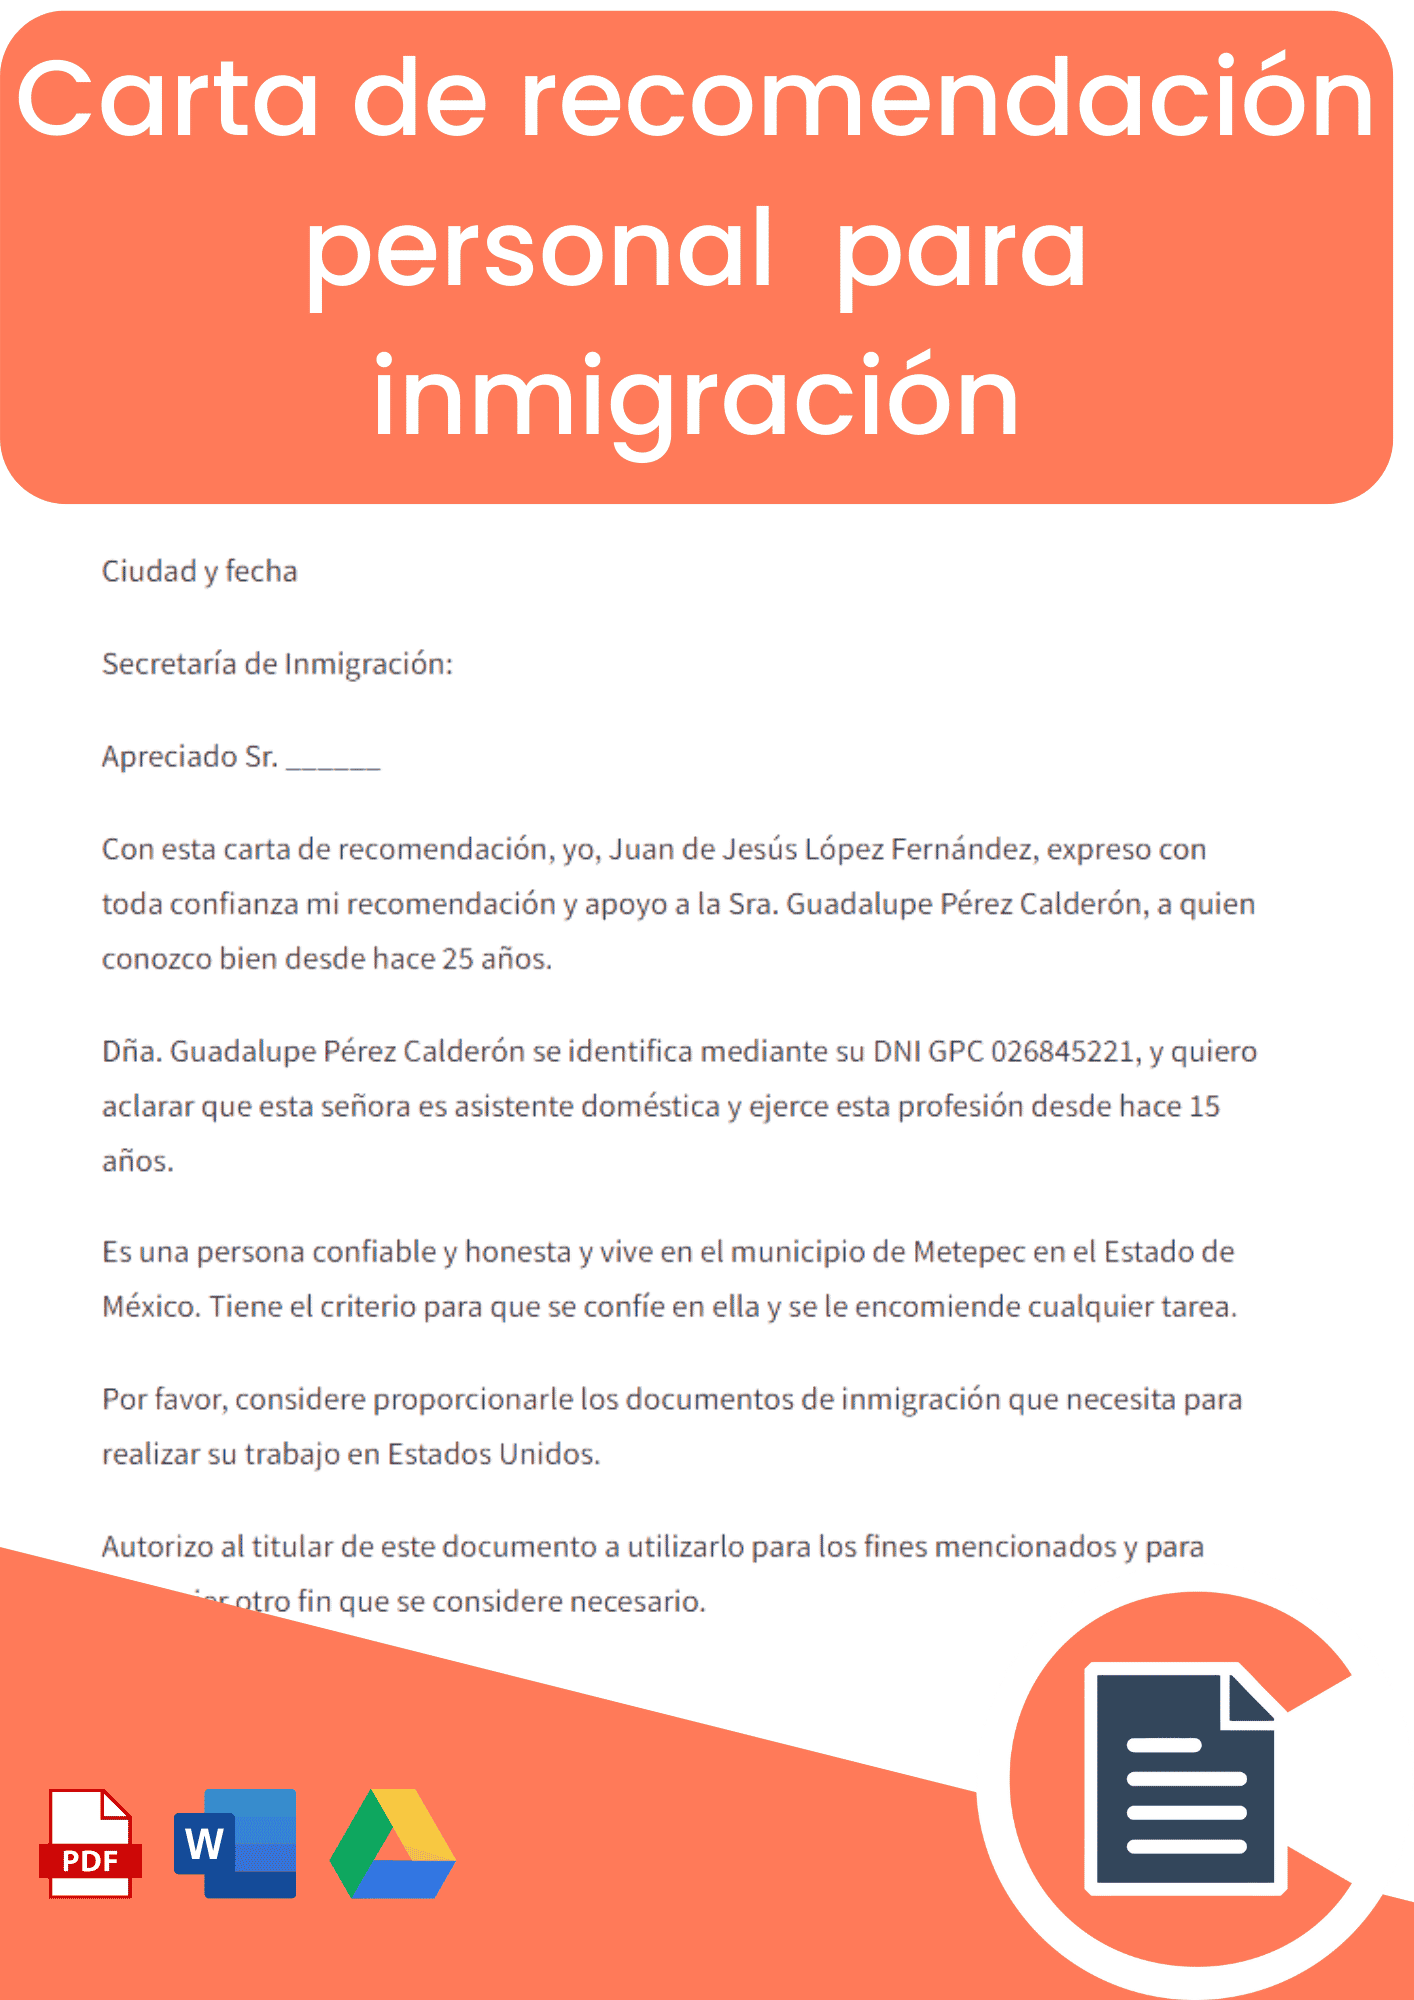 Carta de recomendación personal para inmigración en inglés